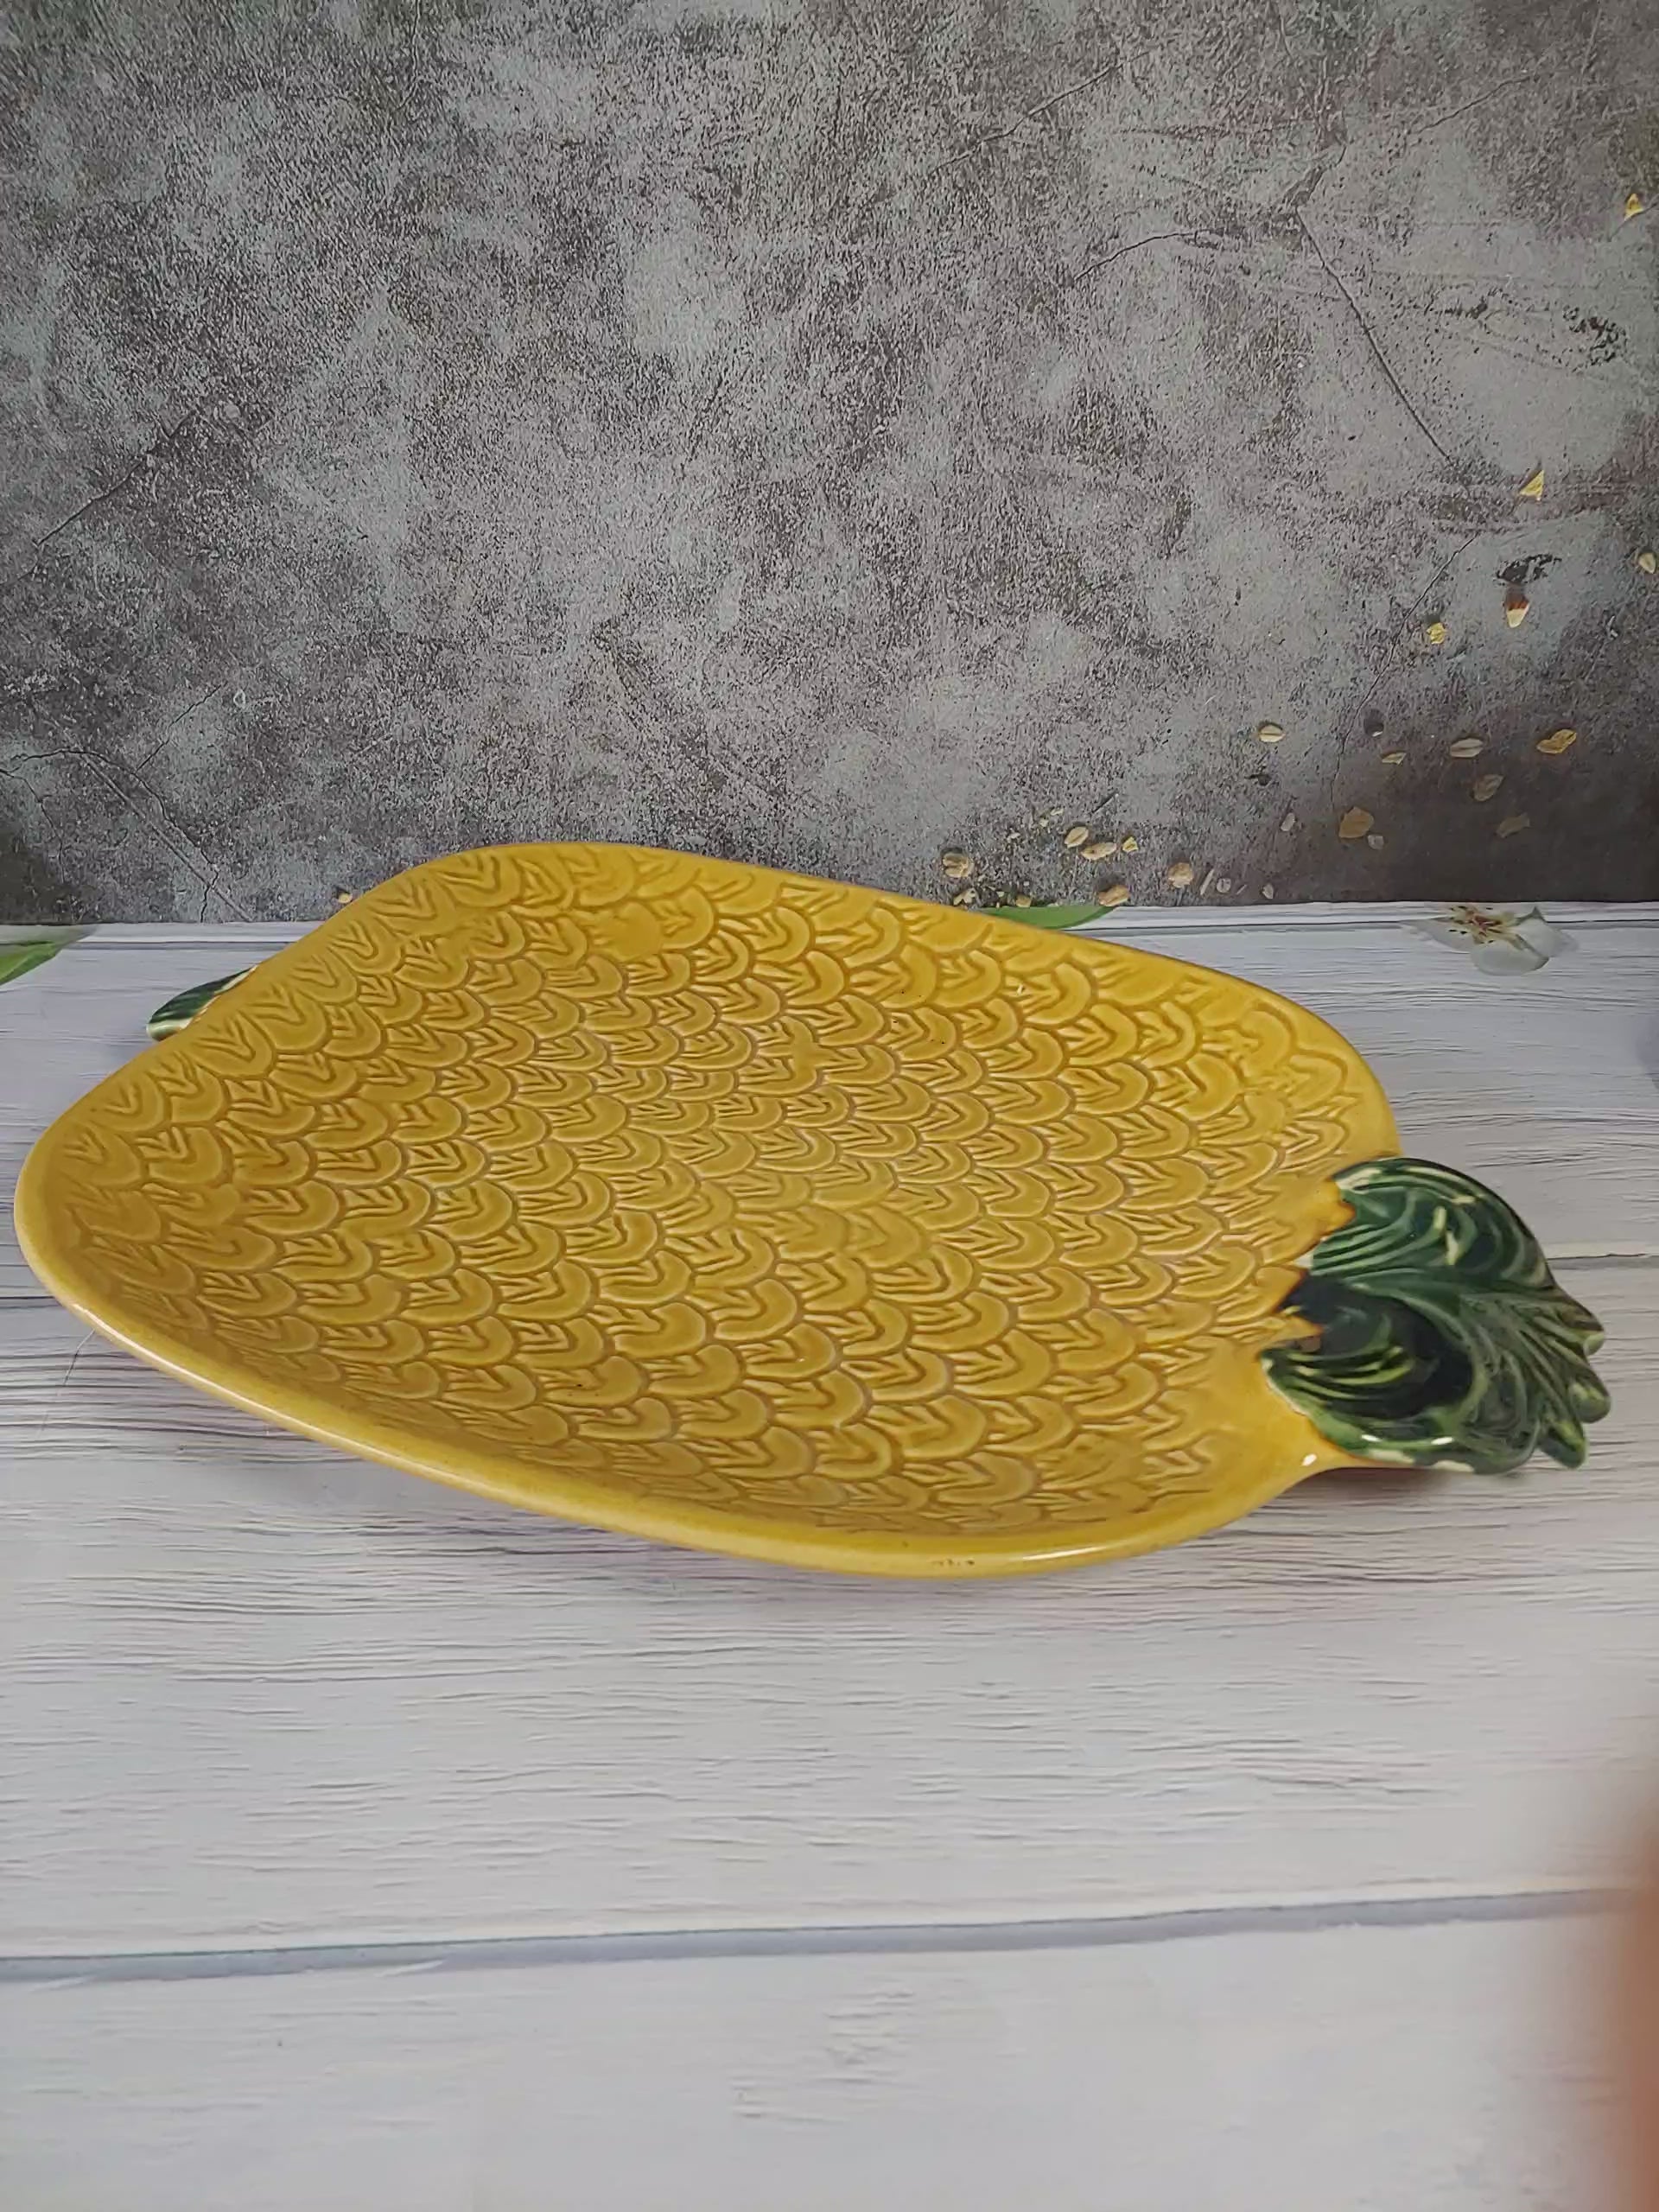 Pineapple Ceramic Serving Platter